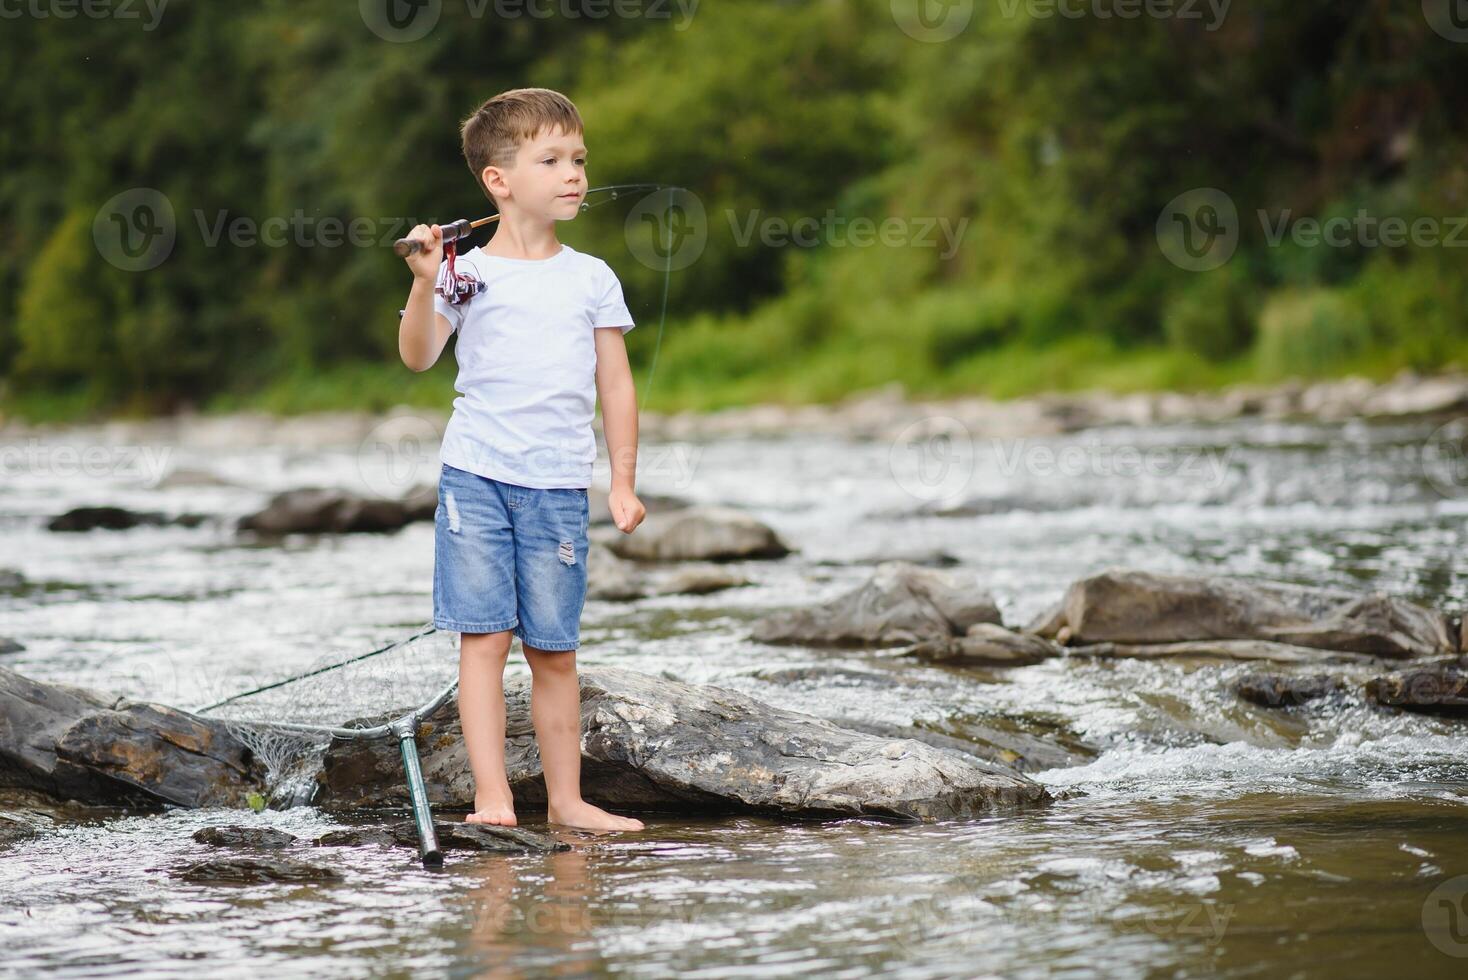 carino ragazzo nel bianca t camicia pesca nel il fiume e ha divertimento, sorrisi. vacanza con bambini, vacanze, attivo fine settimana concetto foto